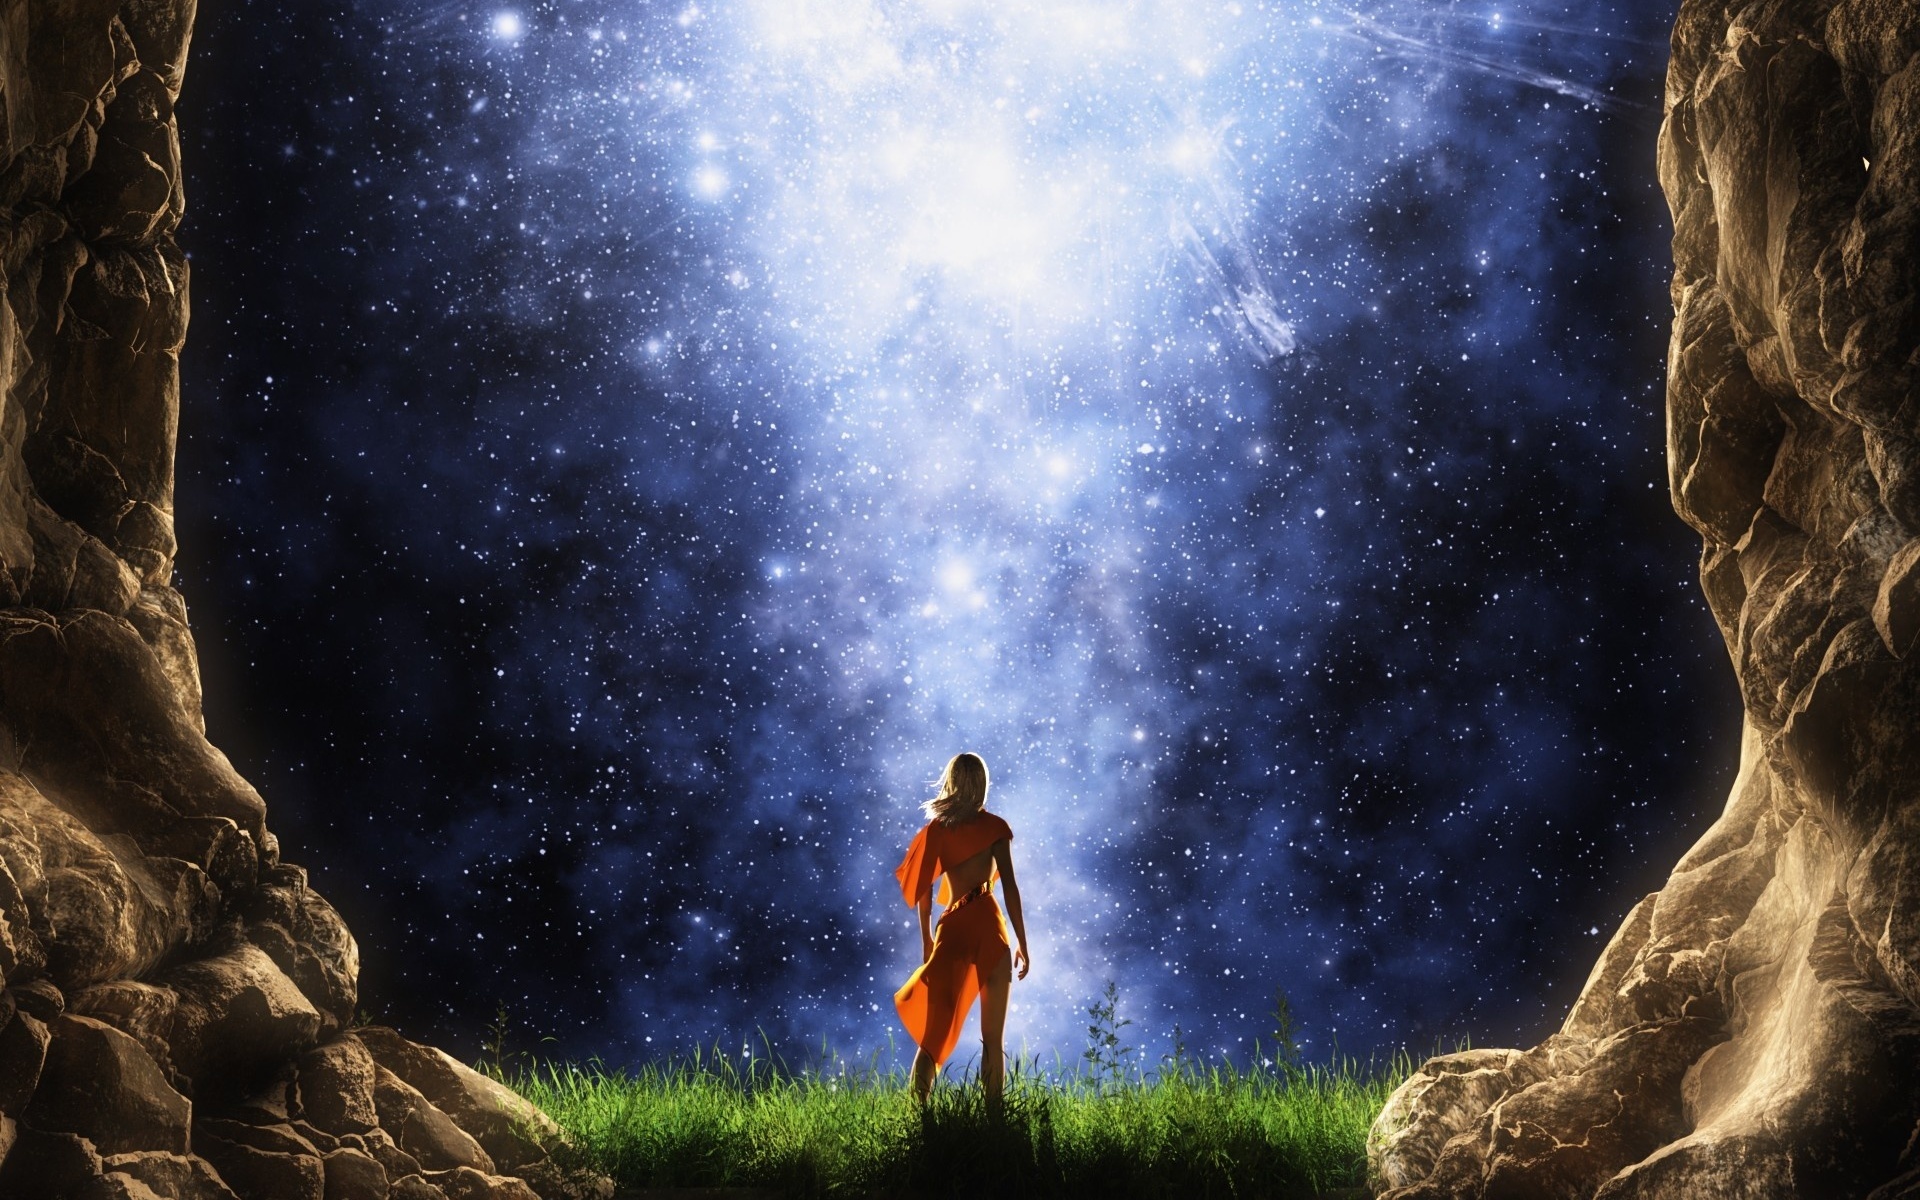 Светловолосая, стройная девушка в оранжевом платье, стоящая на зеленой траве между скалами любуется звездным, ночным небом и Млечном пути